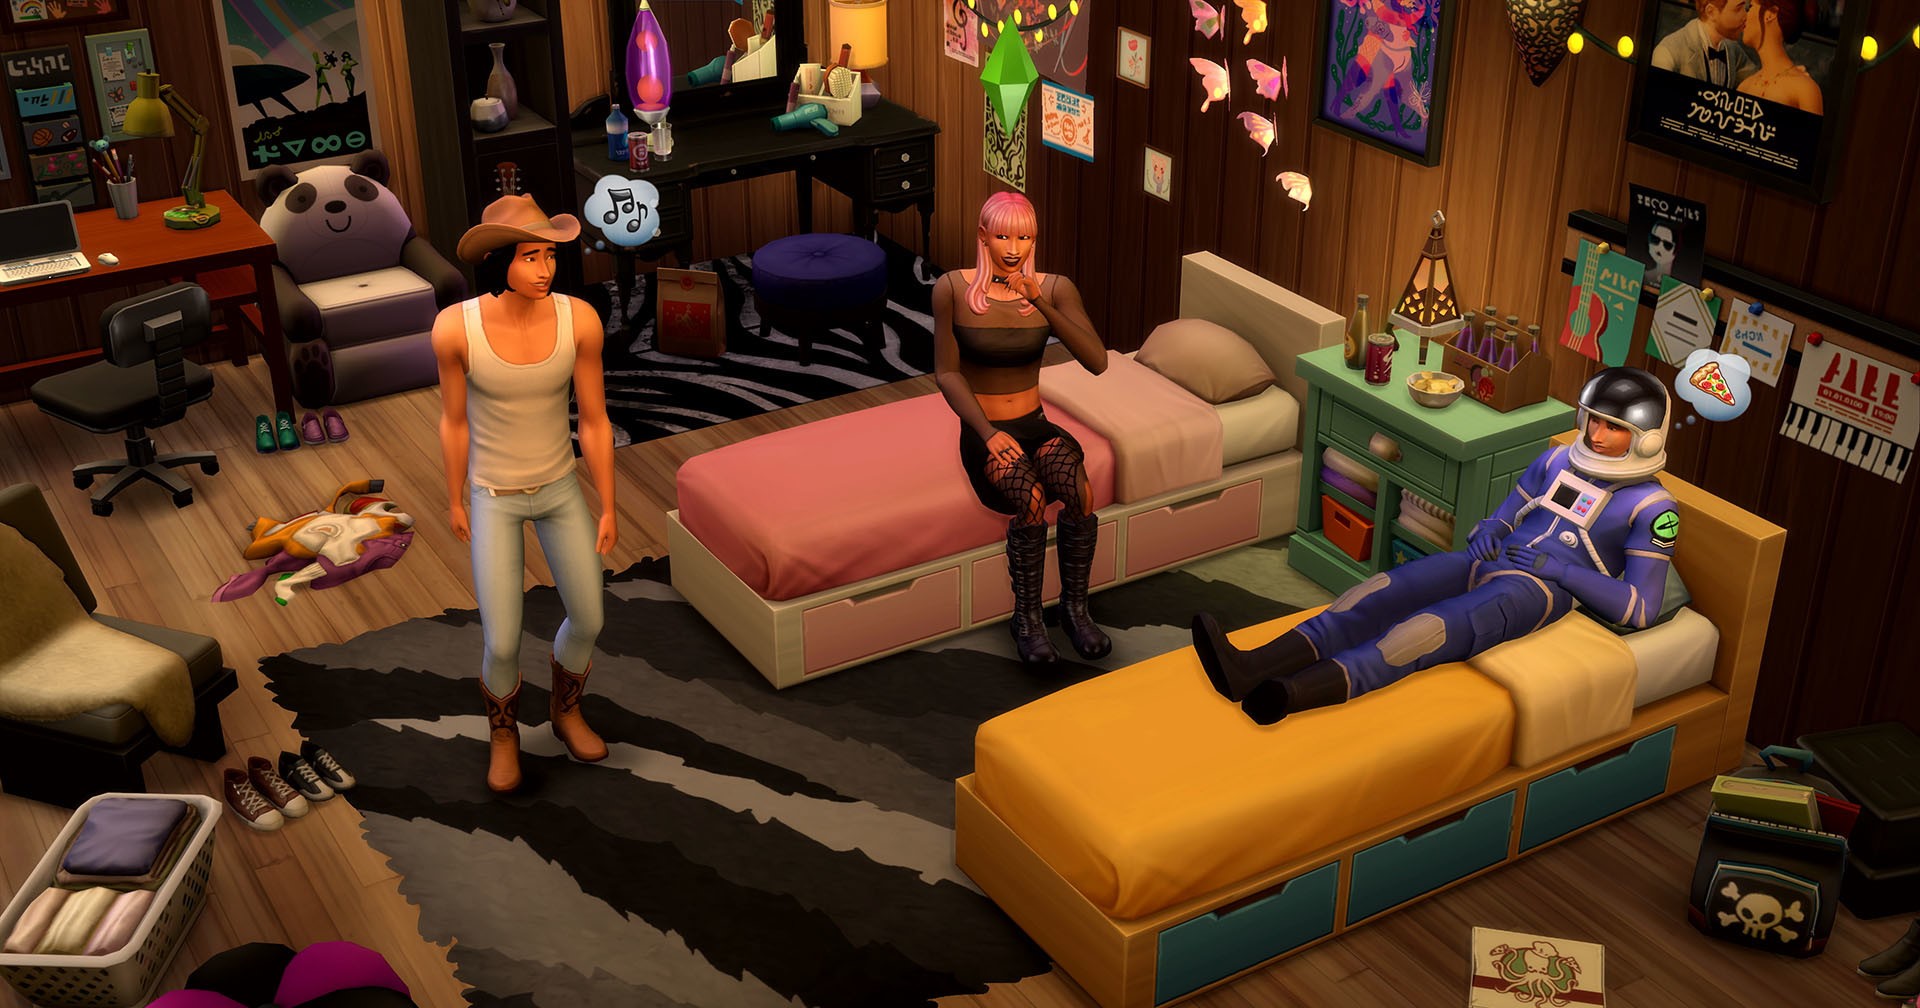 The Sims 4 มีเวลาเล่นทั่วโลกรวมกันมากกว่า 1,000 ล้านชั่วโมง